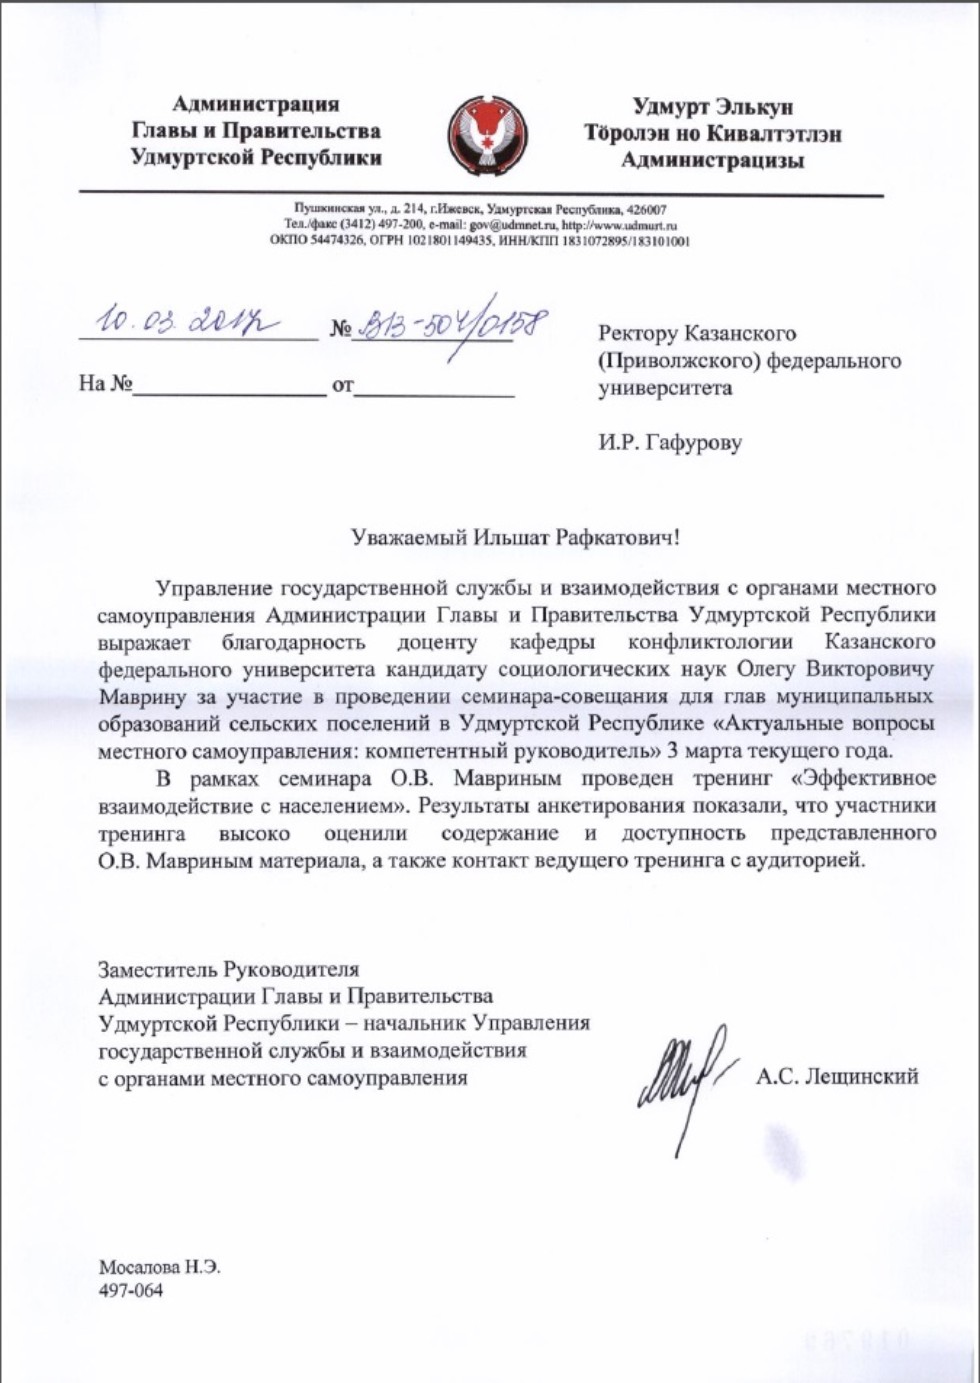 Университетским конфликтологам объявлена благодарность от Администрации Главы и Правительства Удмуртской Республики.